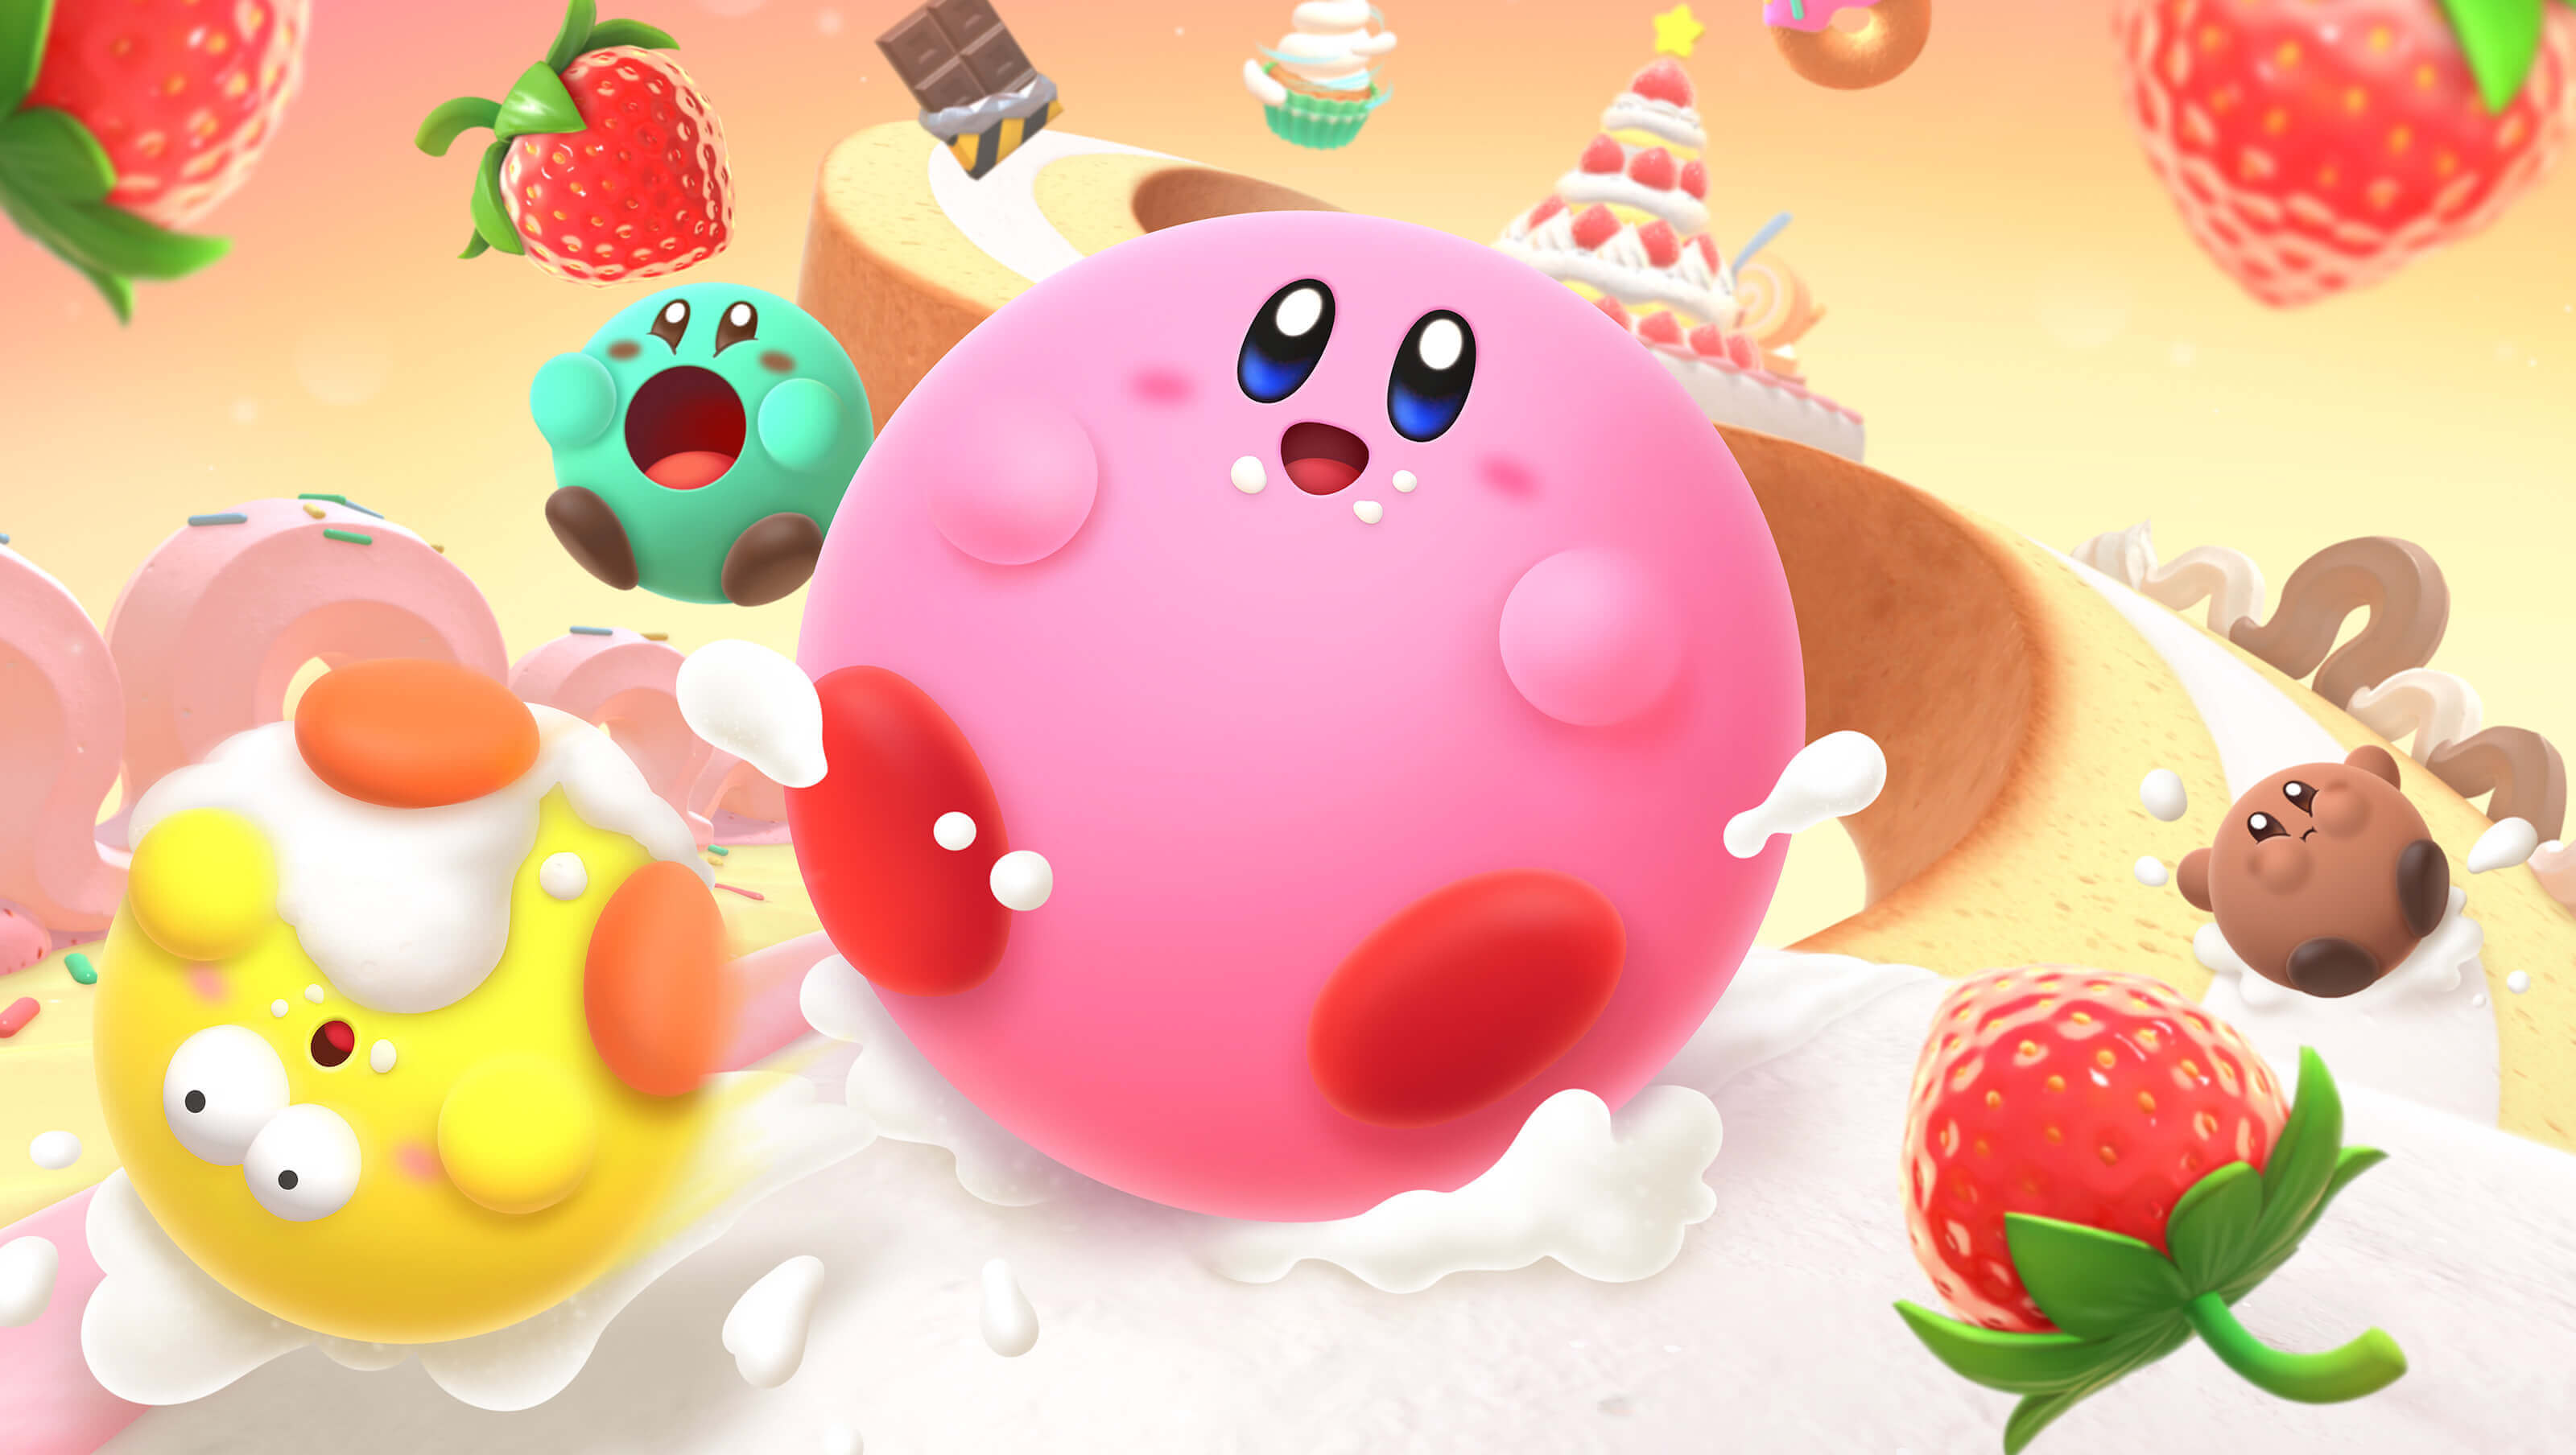 Pocket Tactics – nguồn tổng hợp các bức hình nền Kirby đầy sáng tạo và sinh động, đáp ứng mọi sở thích của các fan hâm mộ Kirby. Hãy thưởng thức các hình nền Kirby đẹp mắt và tìm thấy bức tranh tuyệt đẹp cho màn hình thiết bị của bạn.